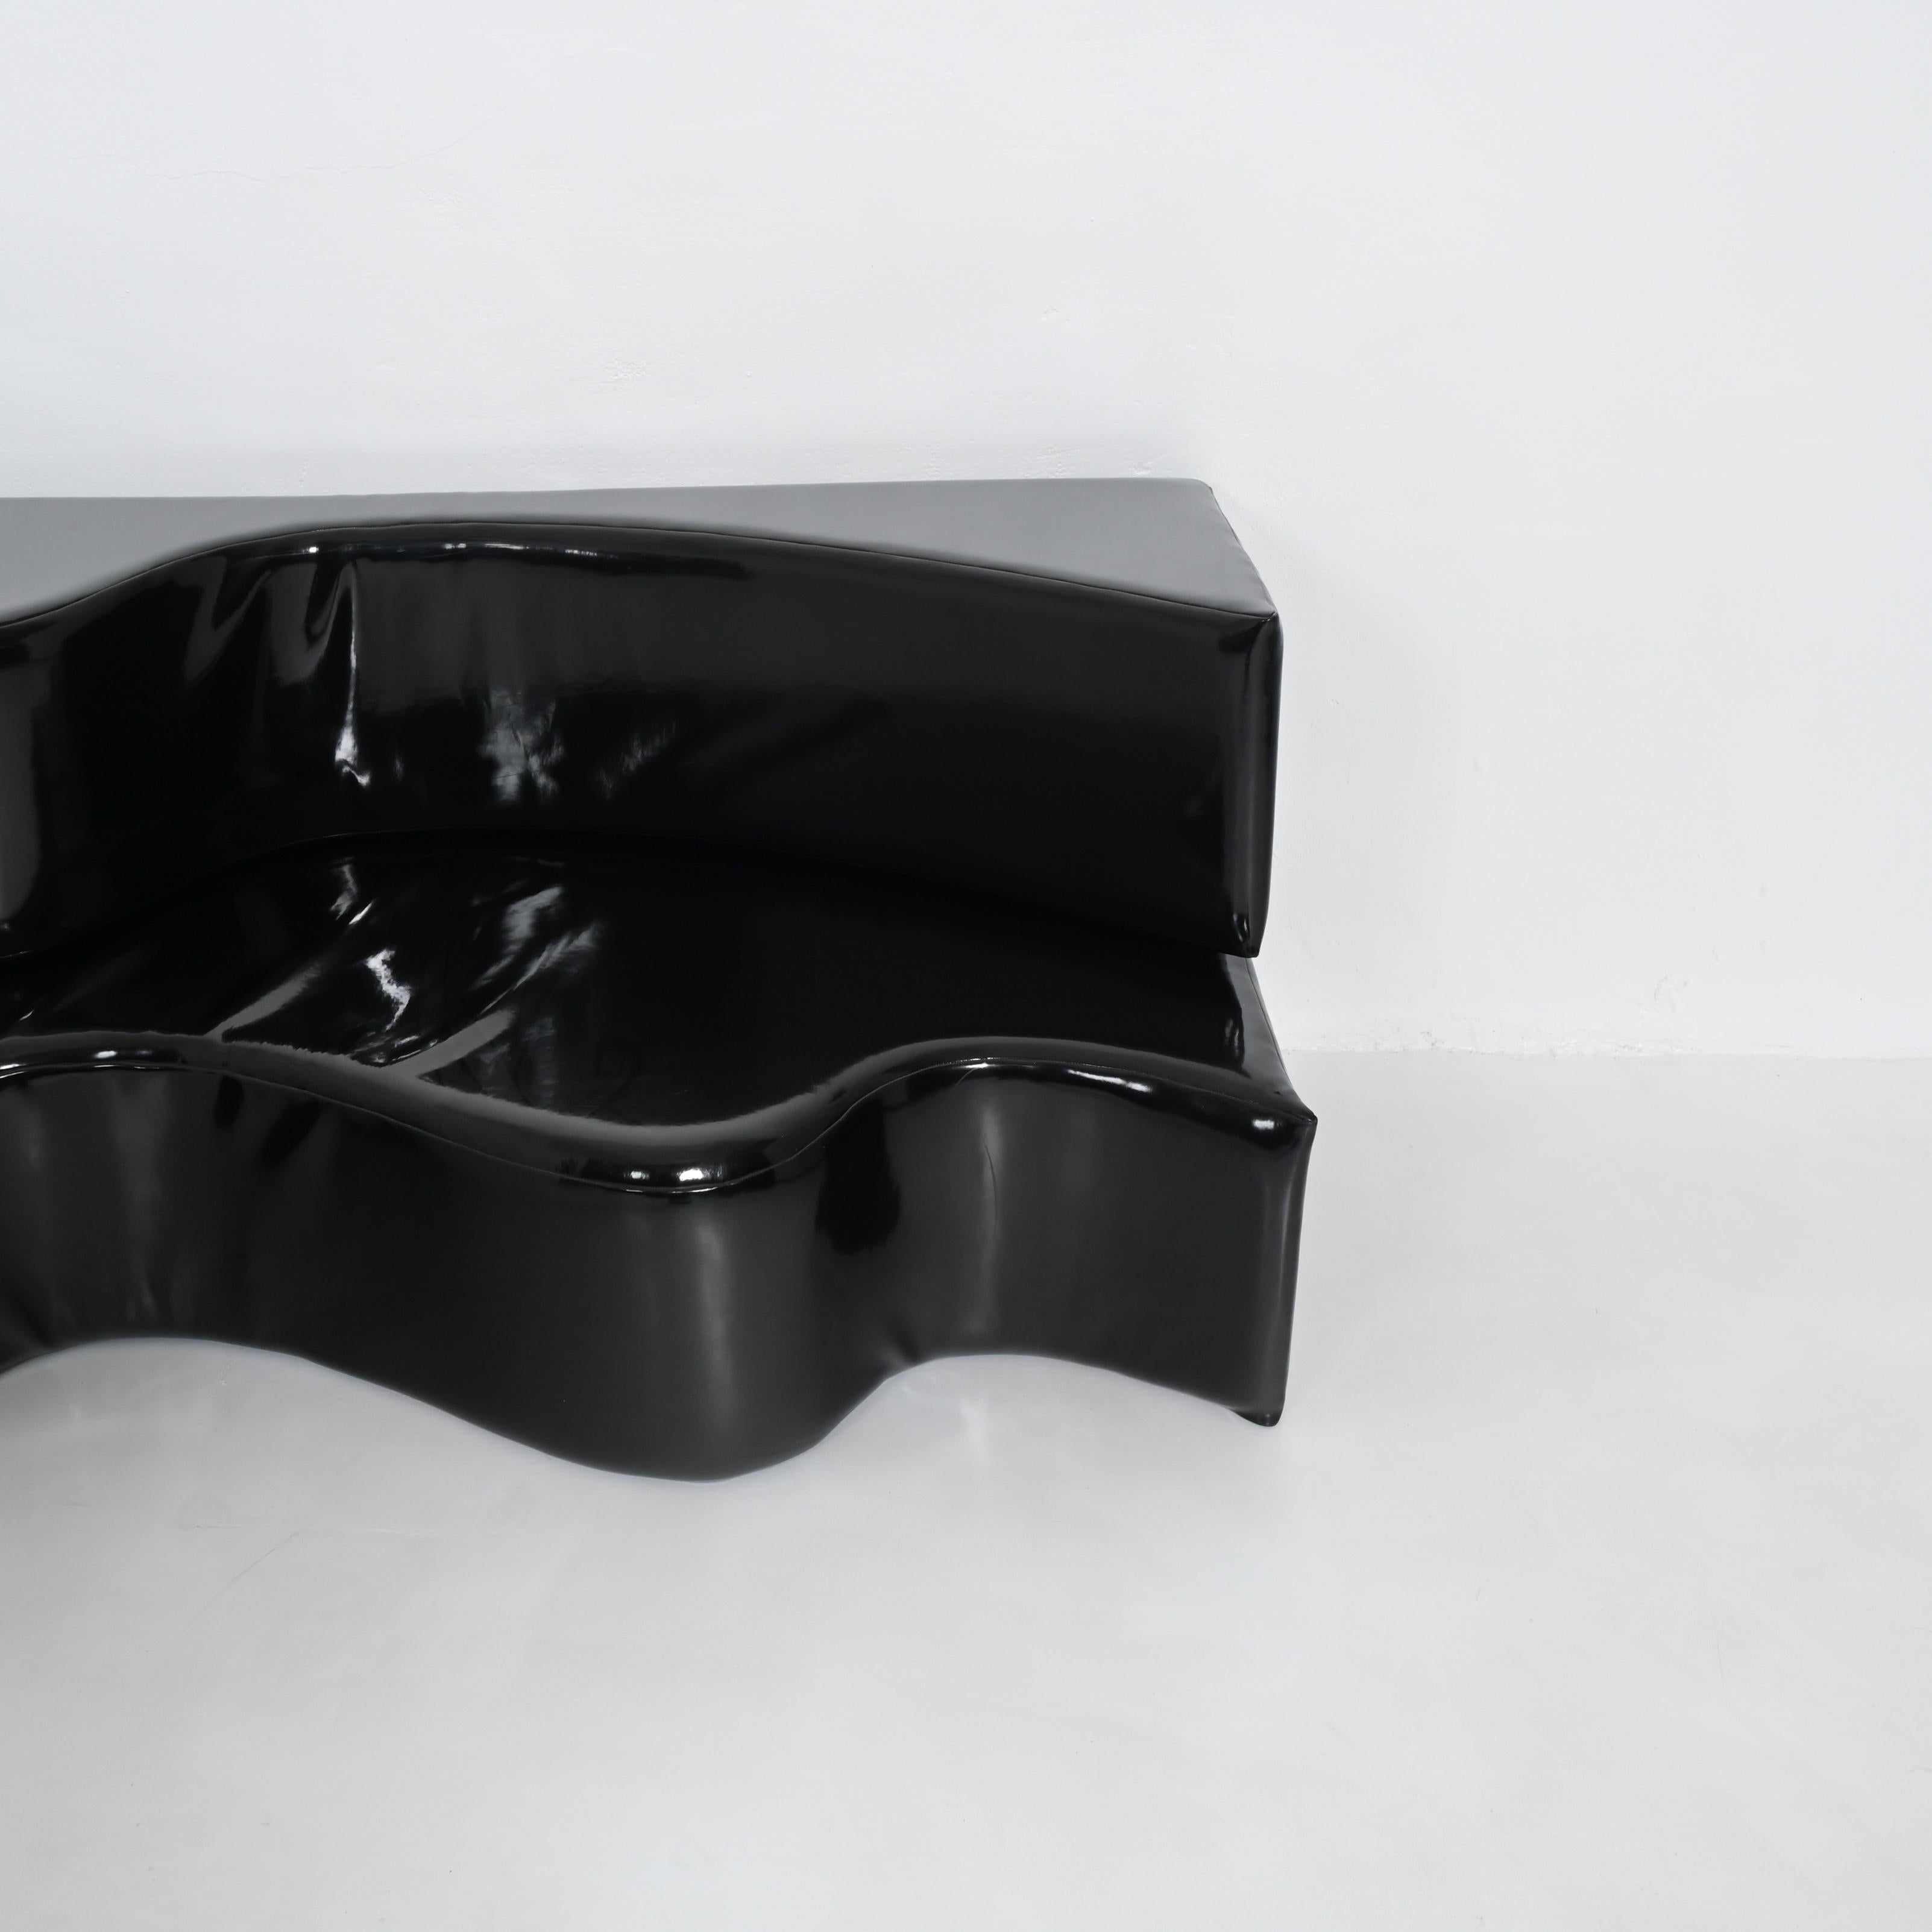 Faux Leather Black Superonda Sofa by Archizoom Associati for Poltronova